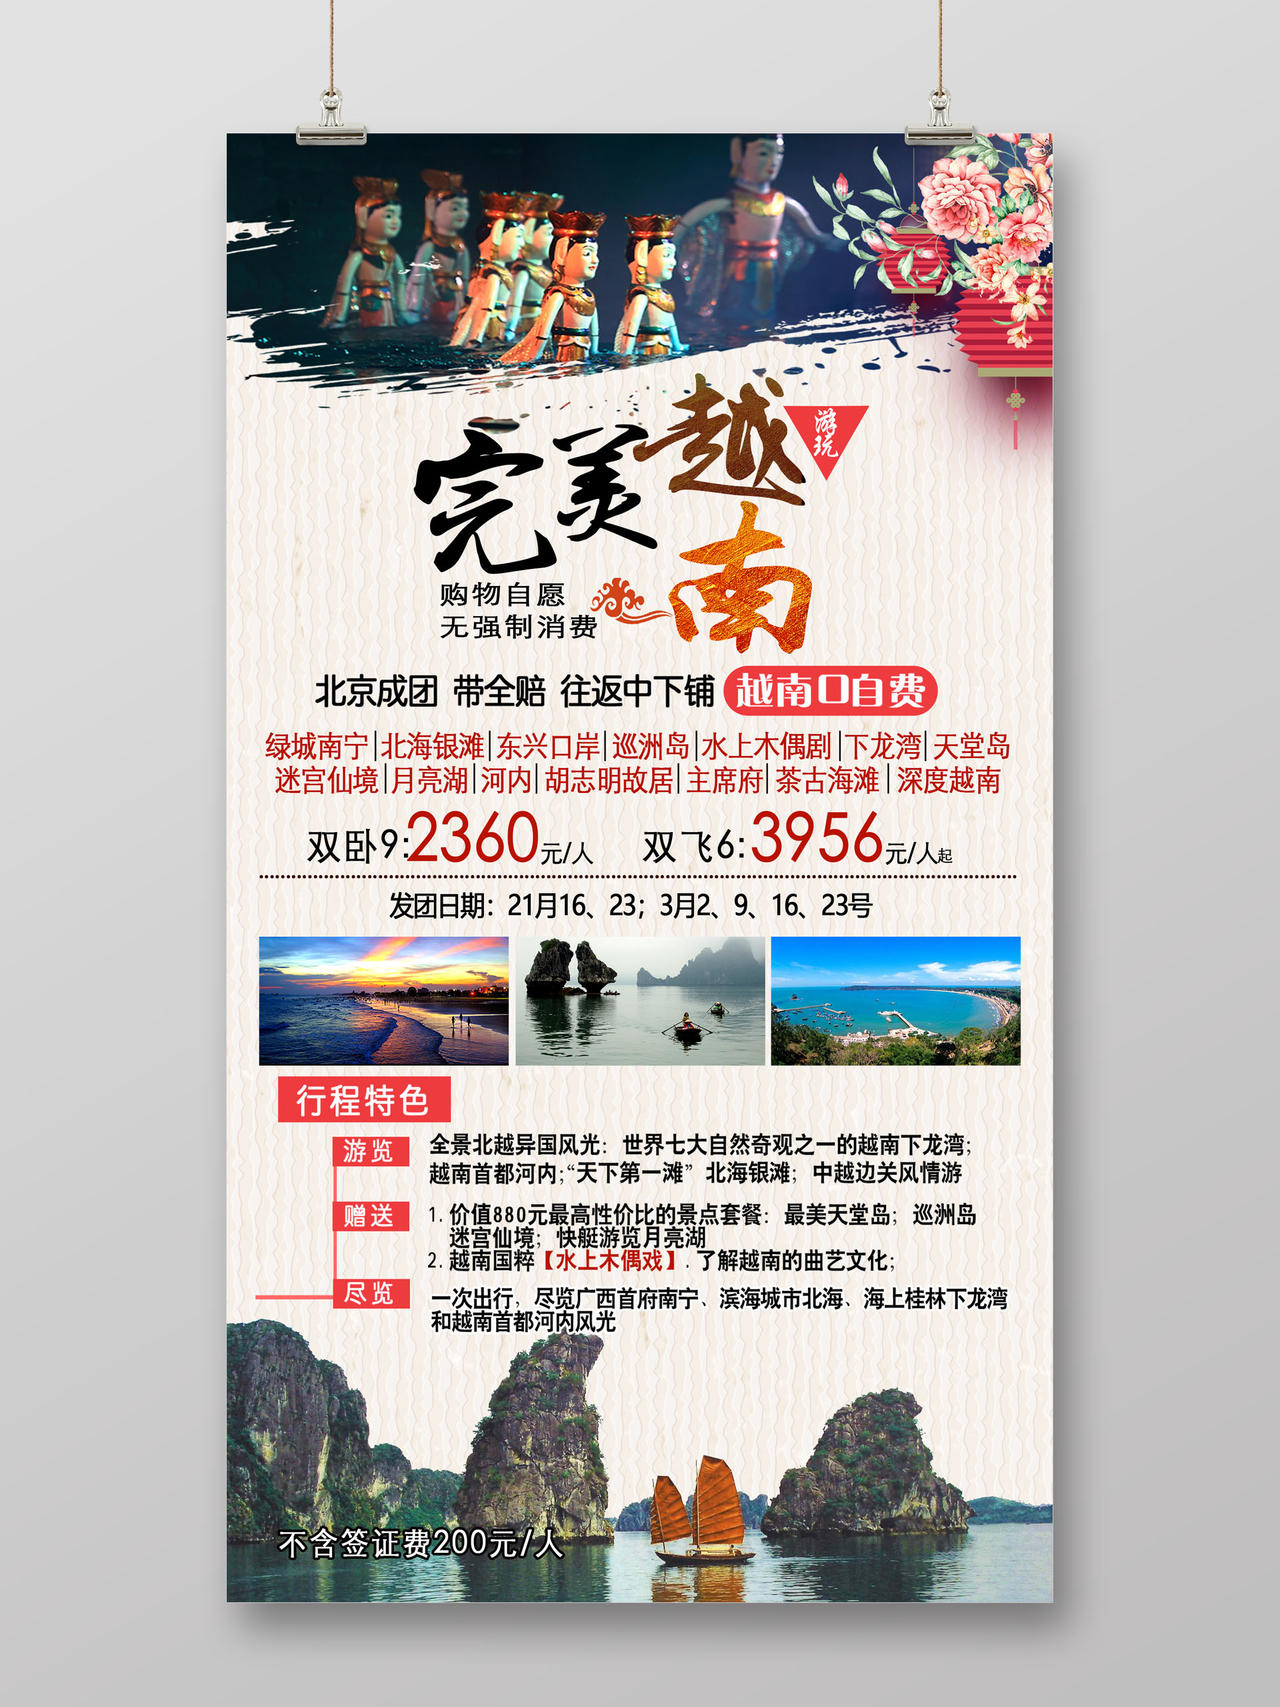 创意合成越南旅游宣传海报 